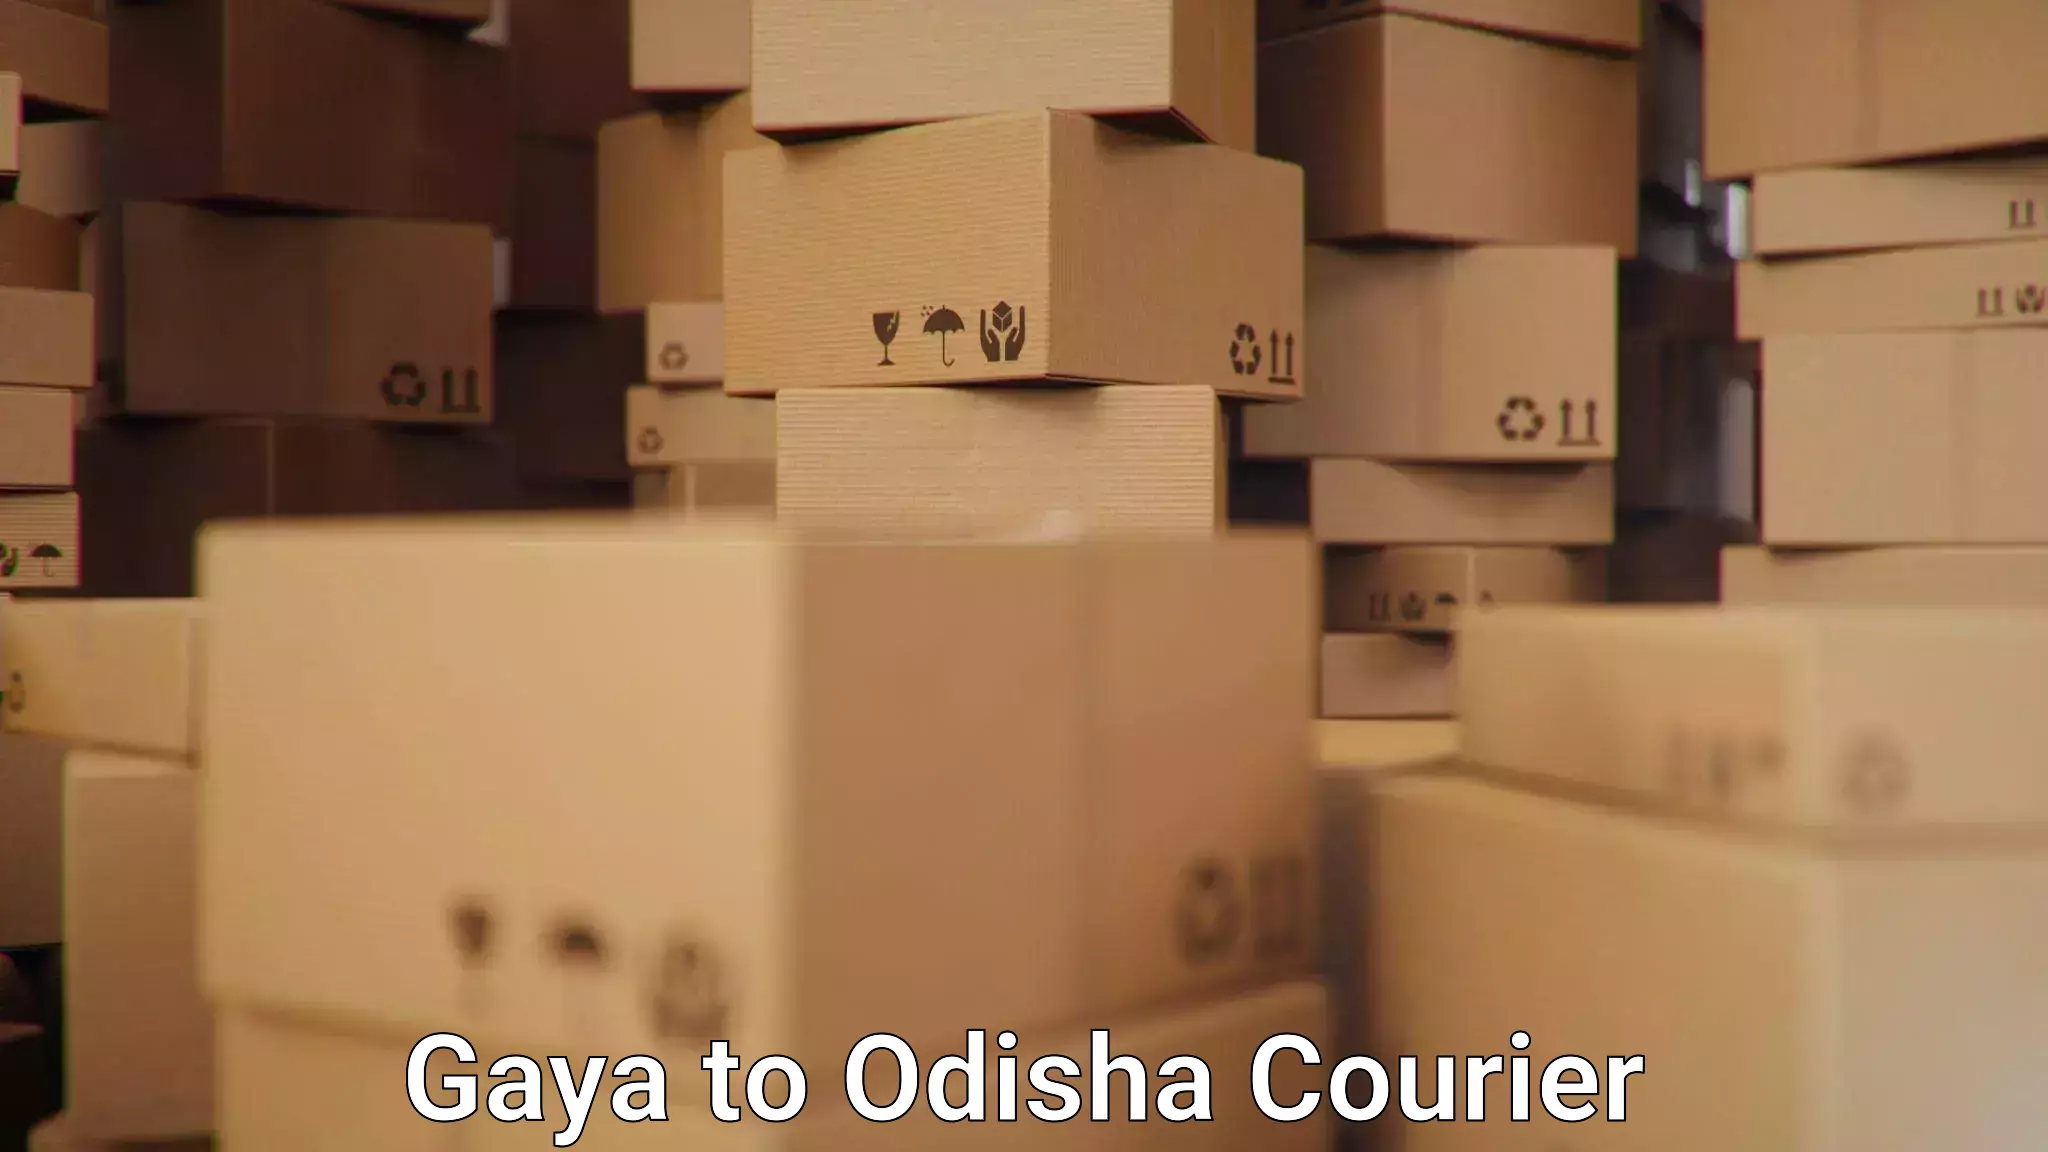 Comprehensive shipping network Gaya to Bhubaneswar